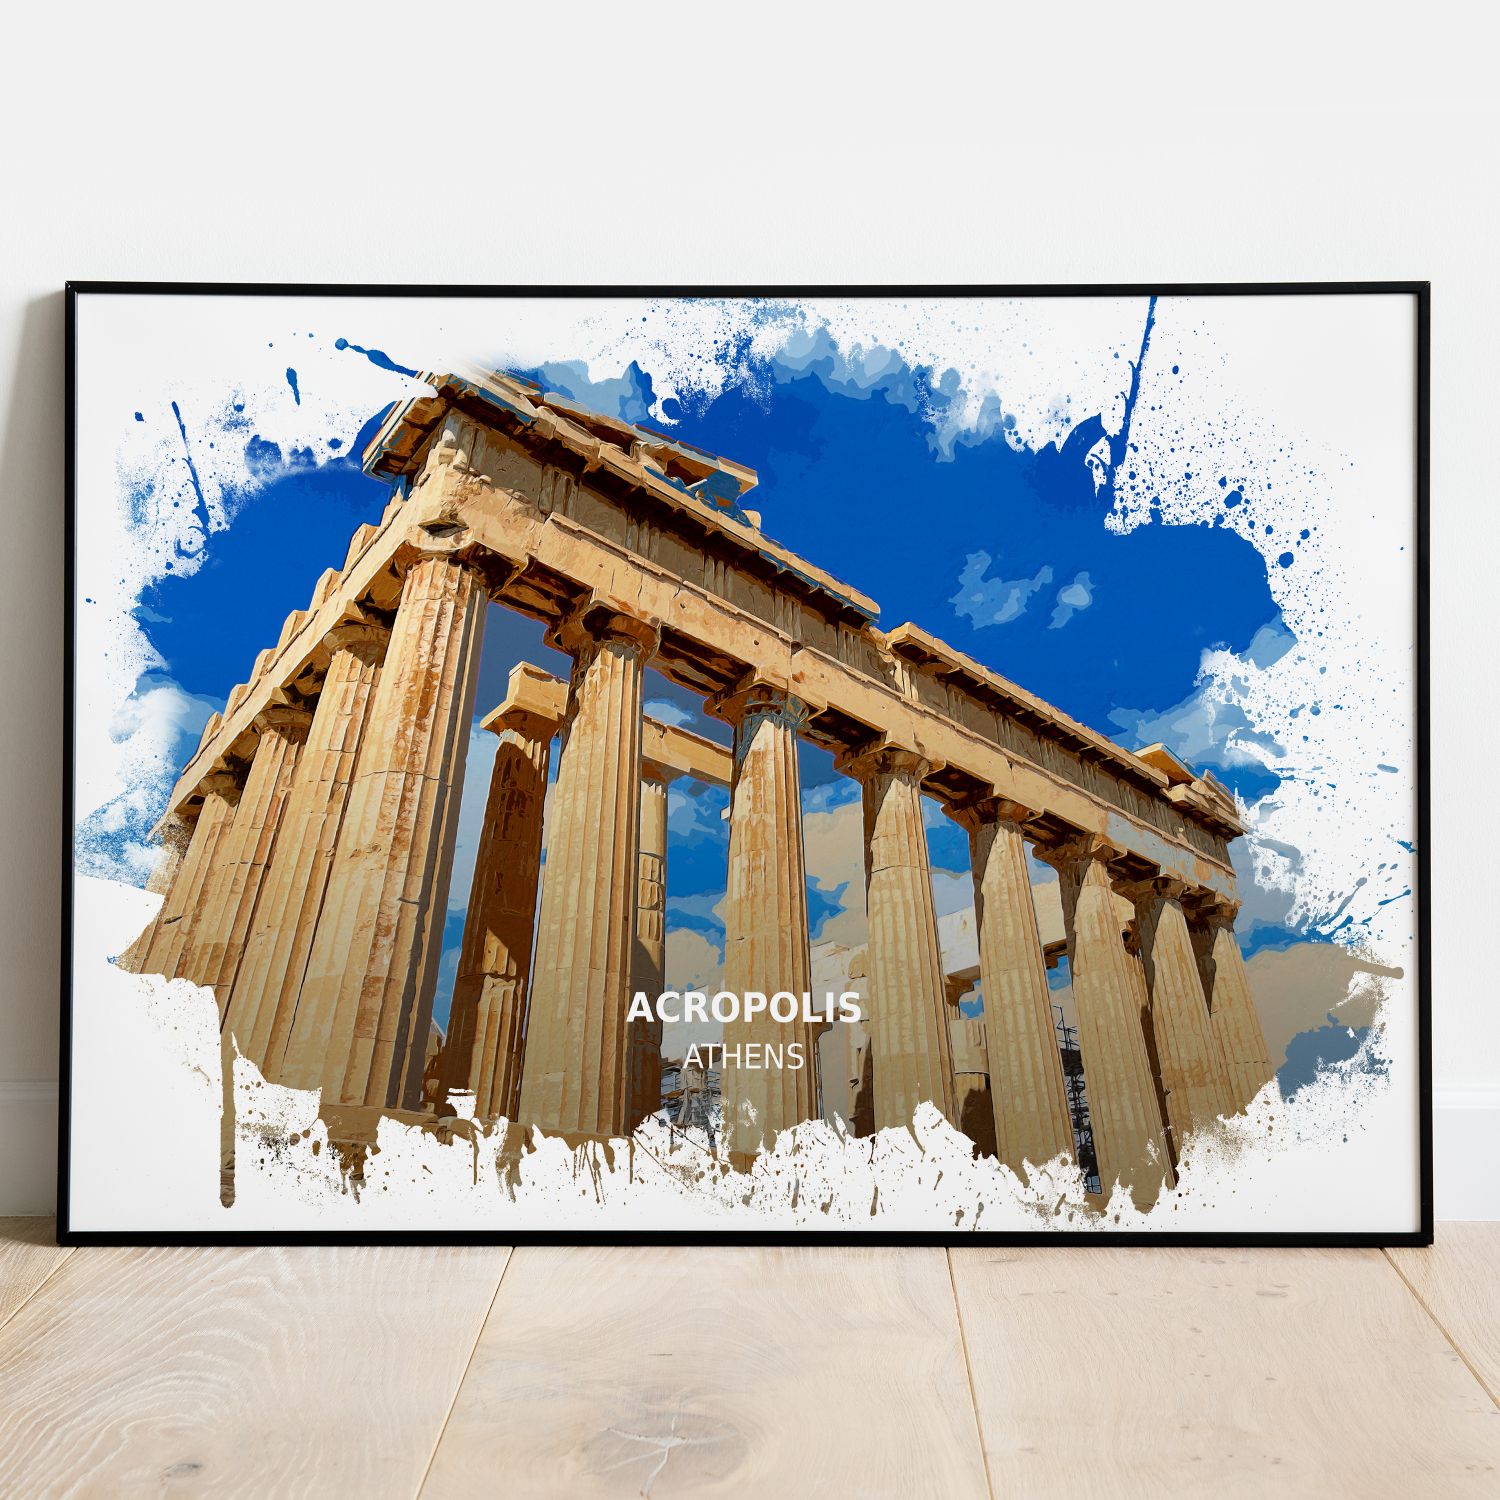 Acropolis - Athens - Print - A4 - Standard - Print Only